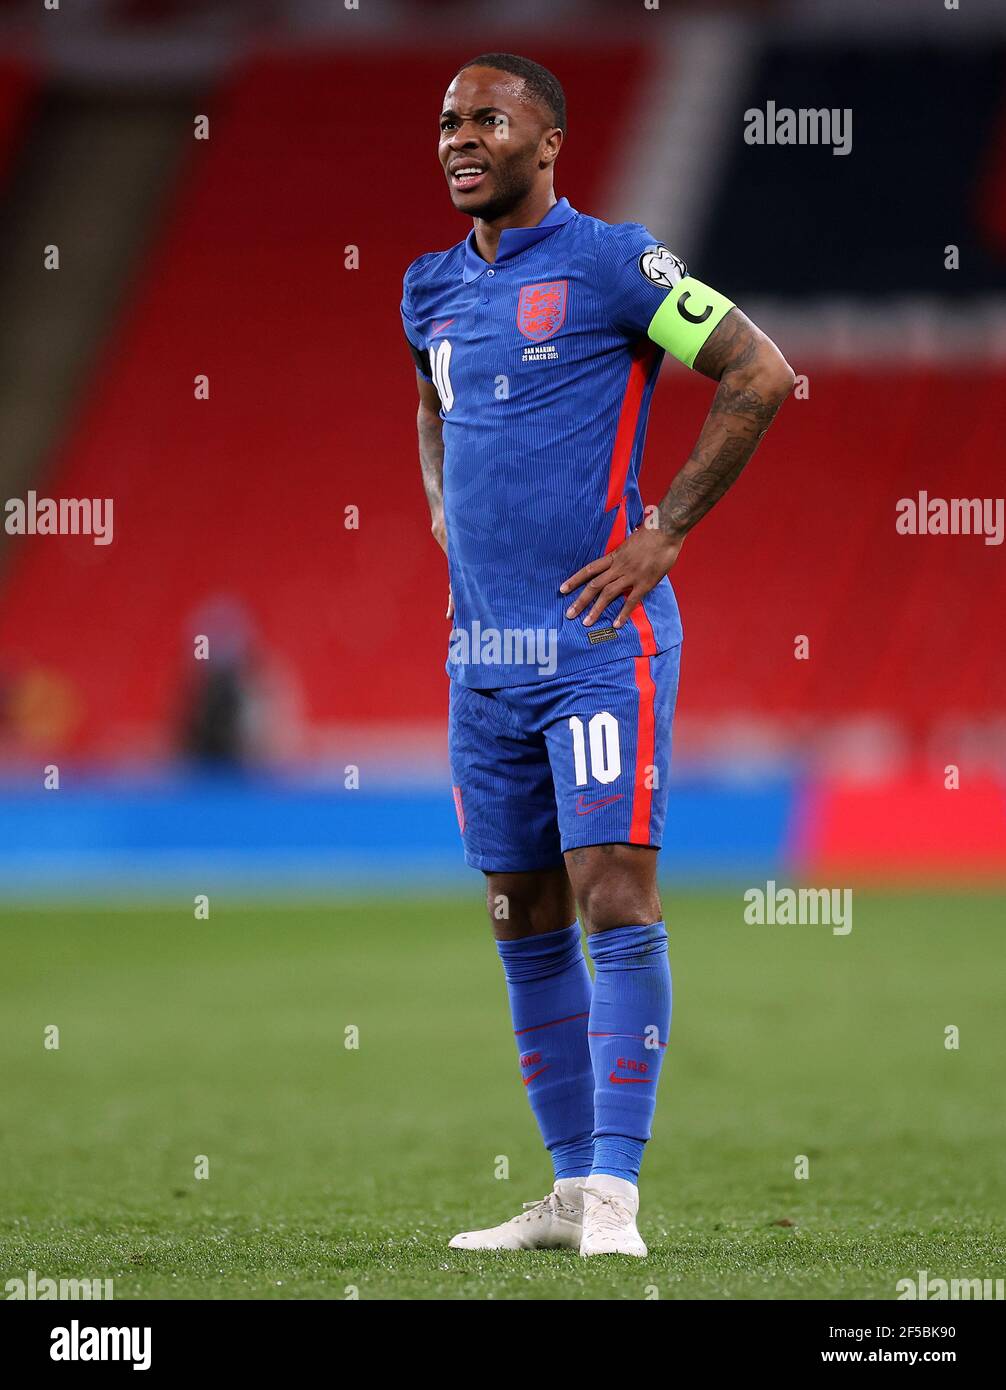 Raheem Sterling in Inghilterra durante la partita di qualificazione della Coppa del mondo FIFA 2022 al Wembley Stadium di Londra. Data immagine: Giovedì 25 marzo 2021. Foto Stock